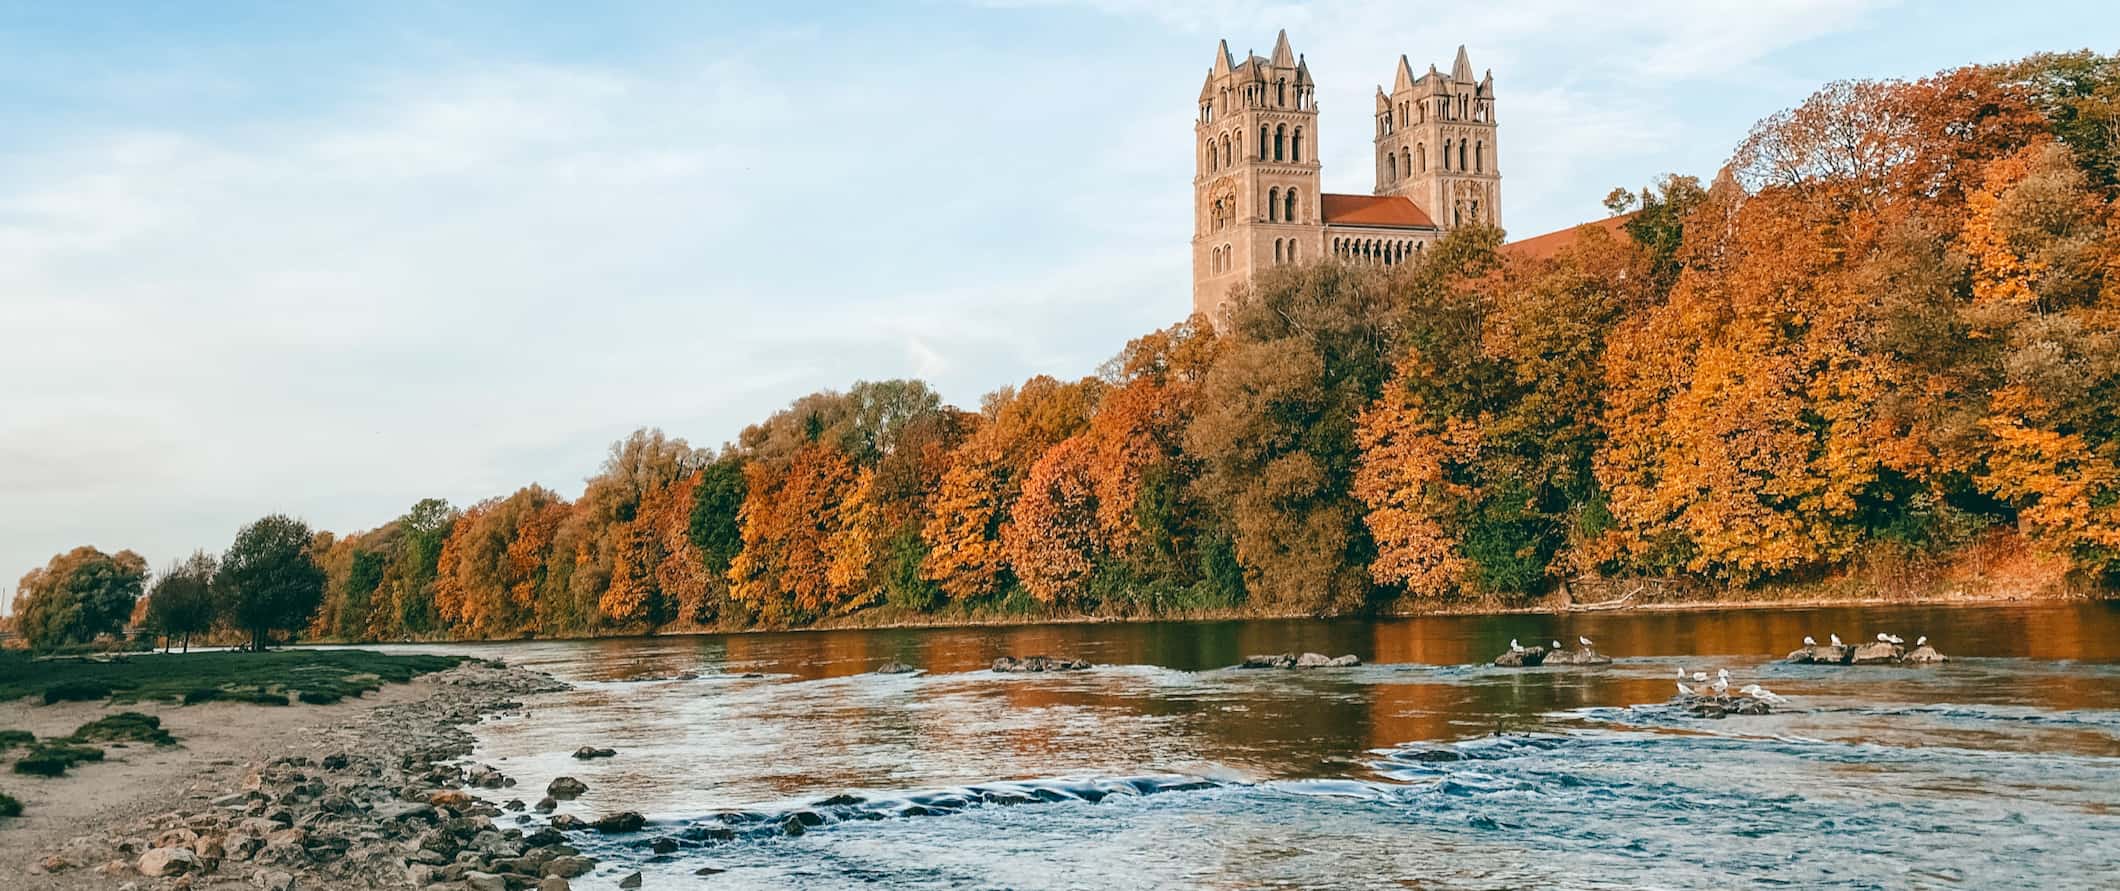 Munique, Alemanha, a vista do lado do rio cercado por árvores em um dia tranquilo